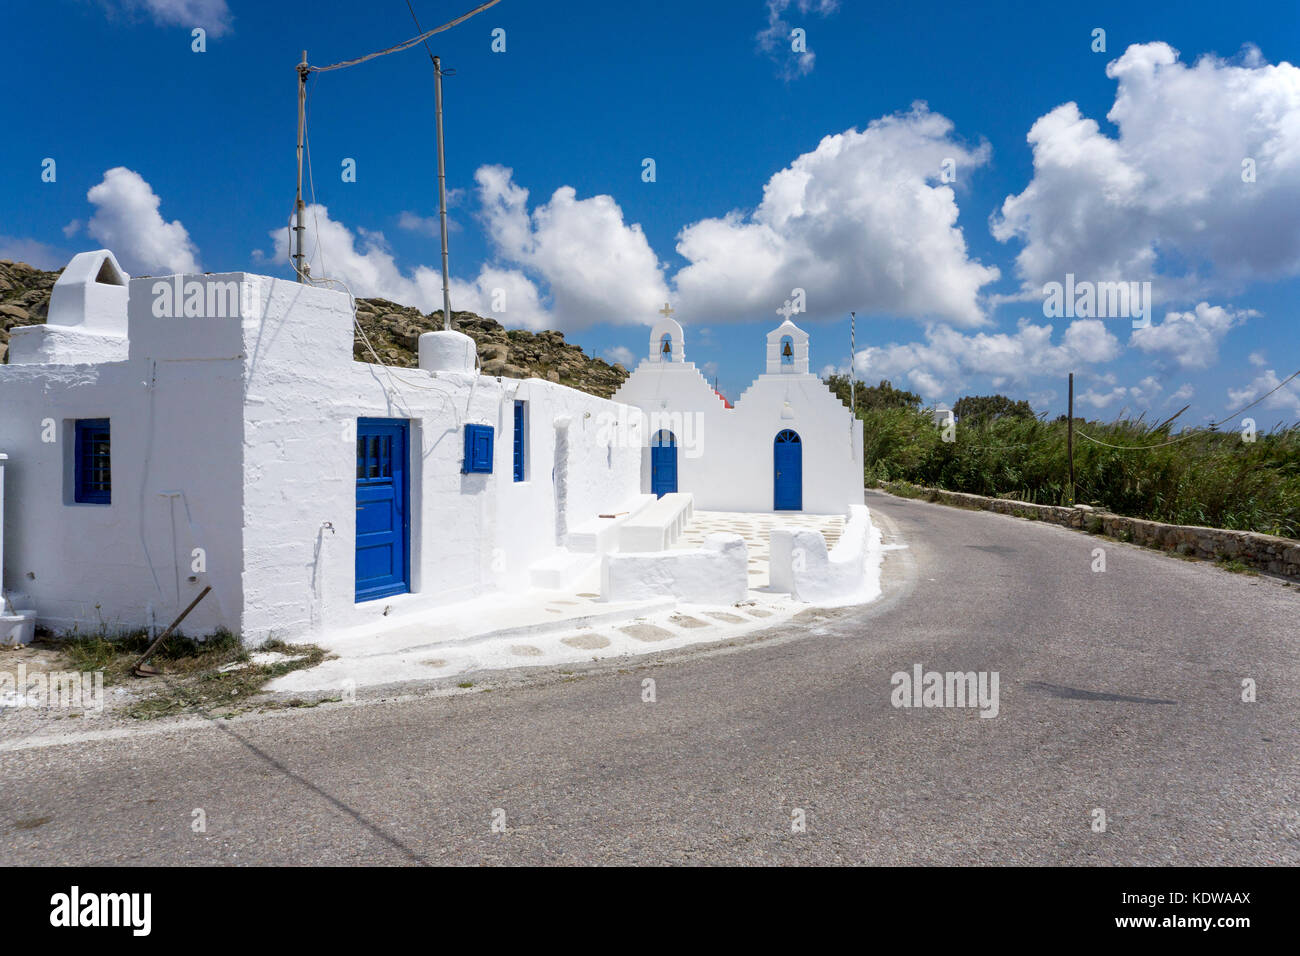 Kleine orthodoxe kapelle an der strasse, inselmitte von mykonos, piccola cappella ortodossa presso la strada, Mykonos Foto Stock